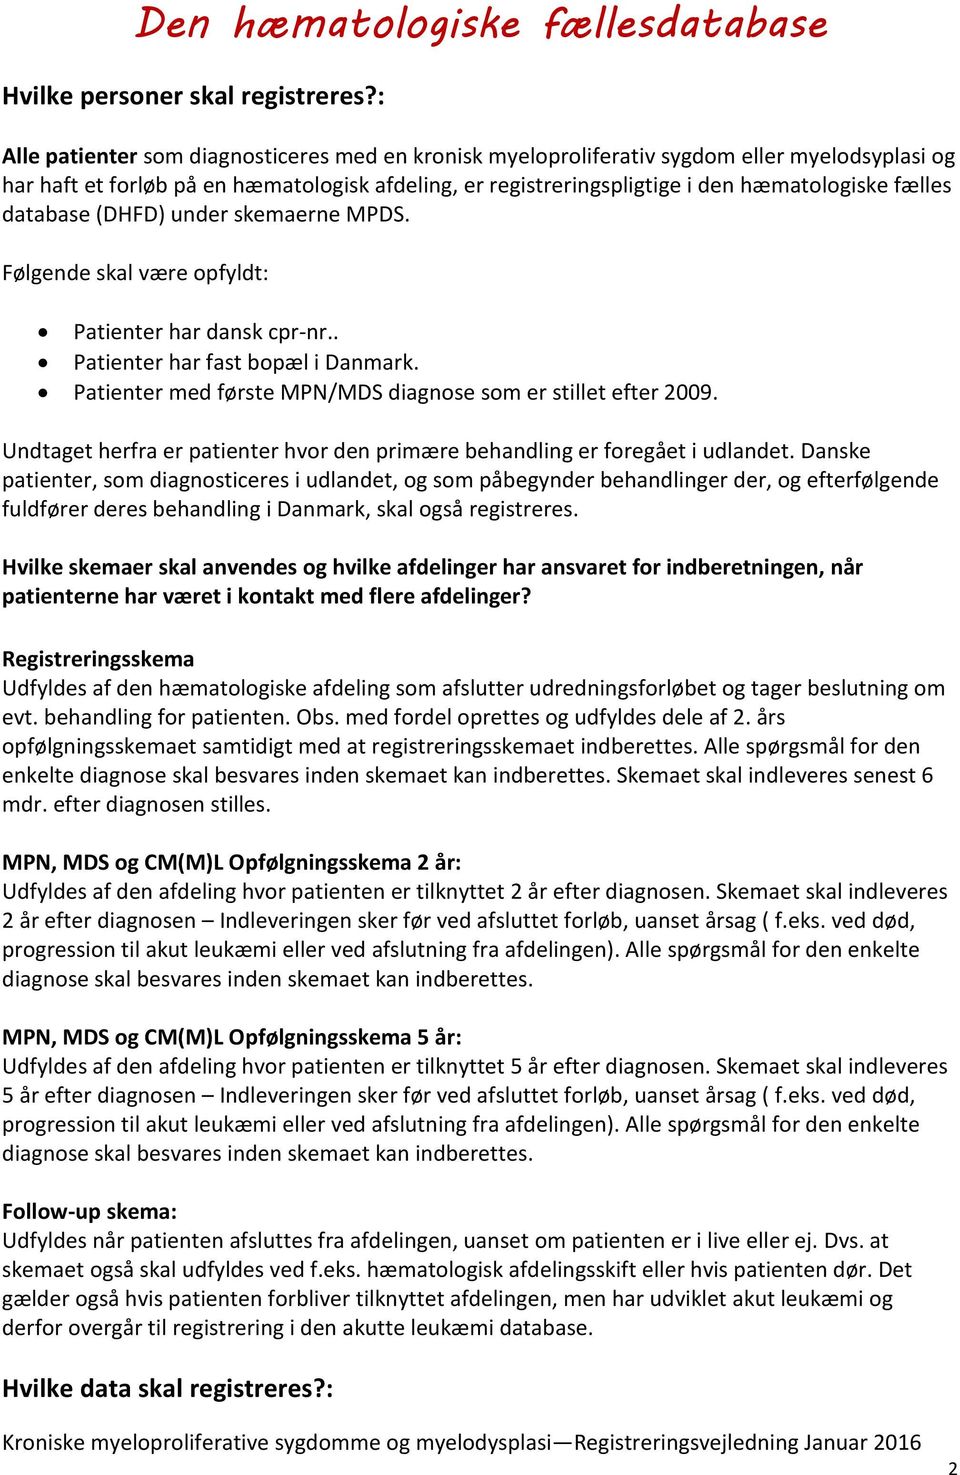 database (DHFD) under skemaerne MPDS. Følgende skal være opfyldt: Patienter har dansk cpr-nr.. Patienter har fast bopæl i Danmark. Patienter med første MPN/MDS diagnose som er stillet efter 2009.